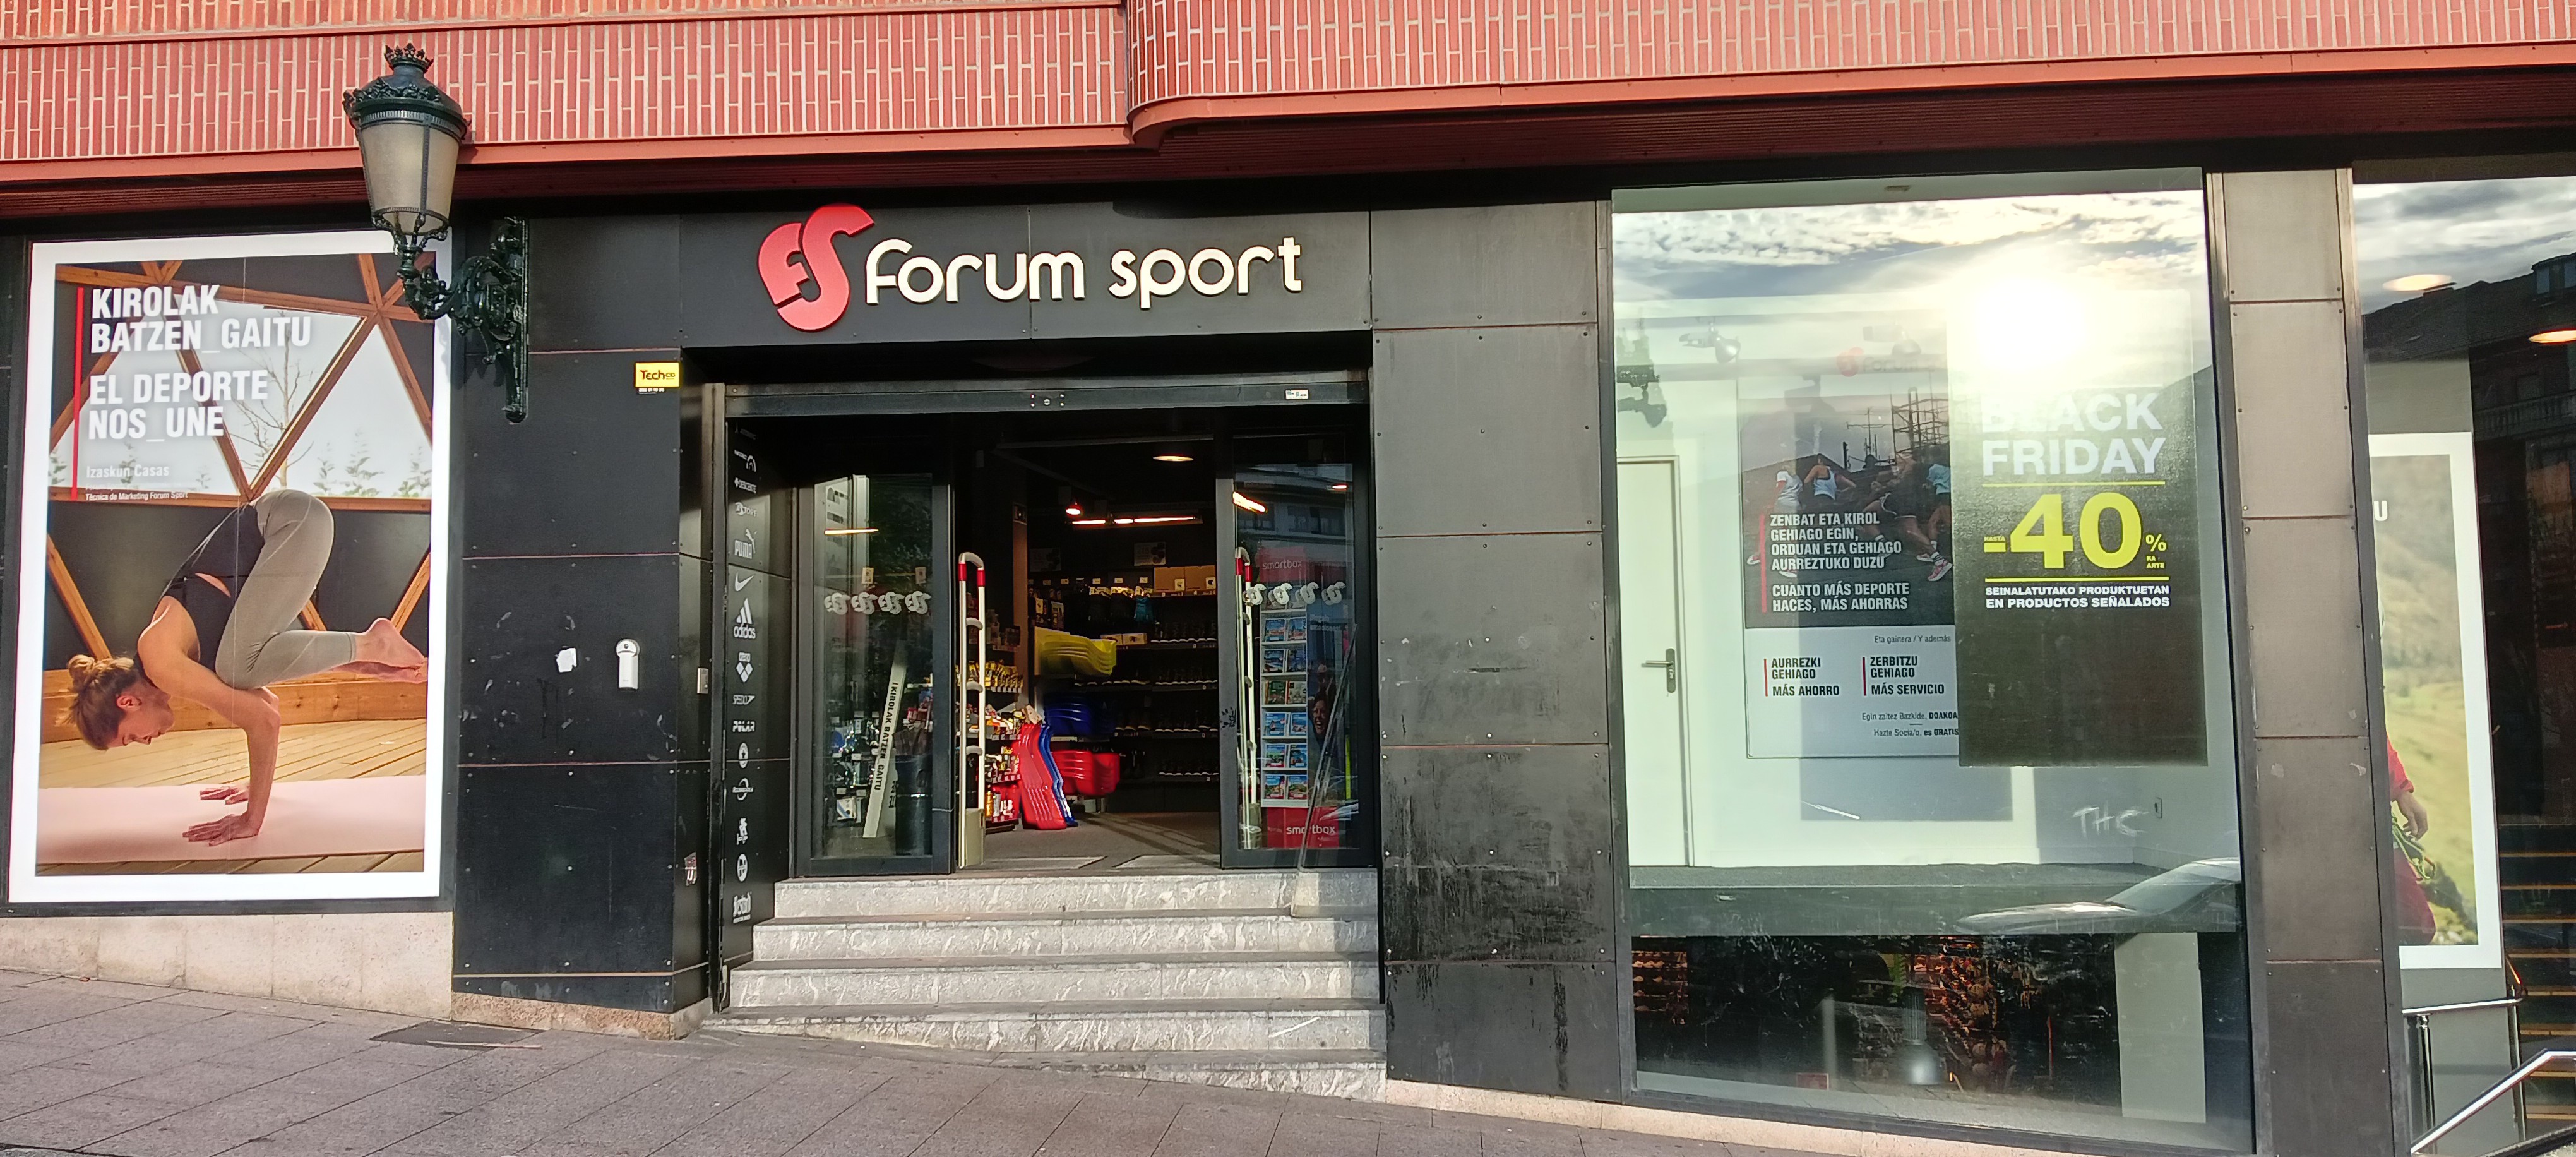 Tienda Forum Sport Gernika